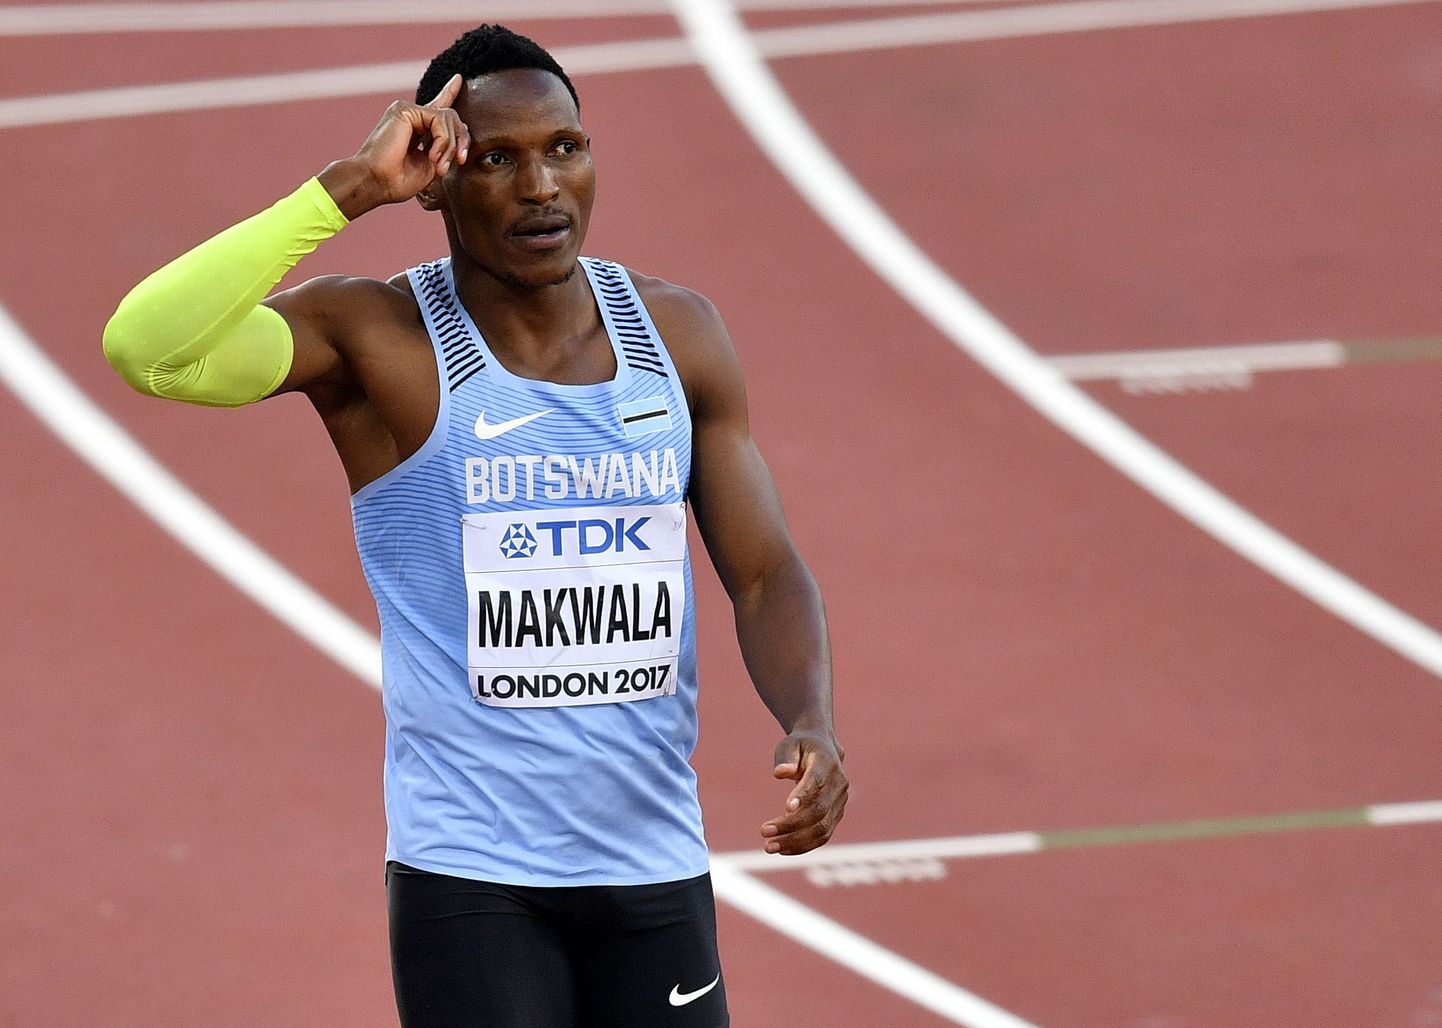 Botswana jooksja Isaac Makwala ei osalenud eile hooaja edetabelijuhia 200 meetri eeljooksus, kuid püüab täna toimuvas 400 meetri finaalis kaasa teha.